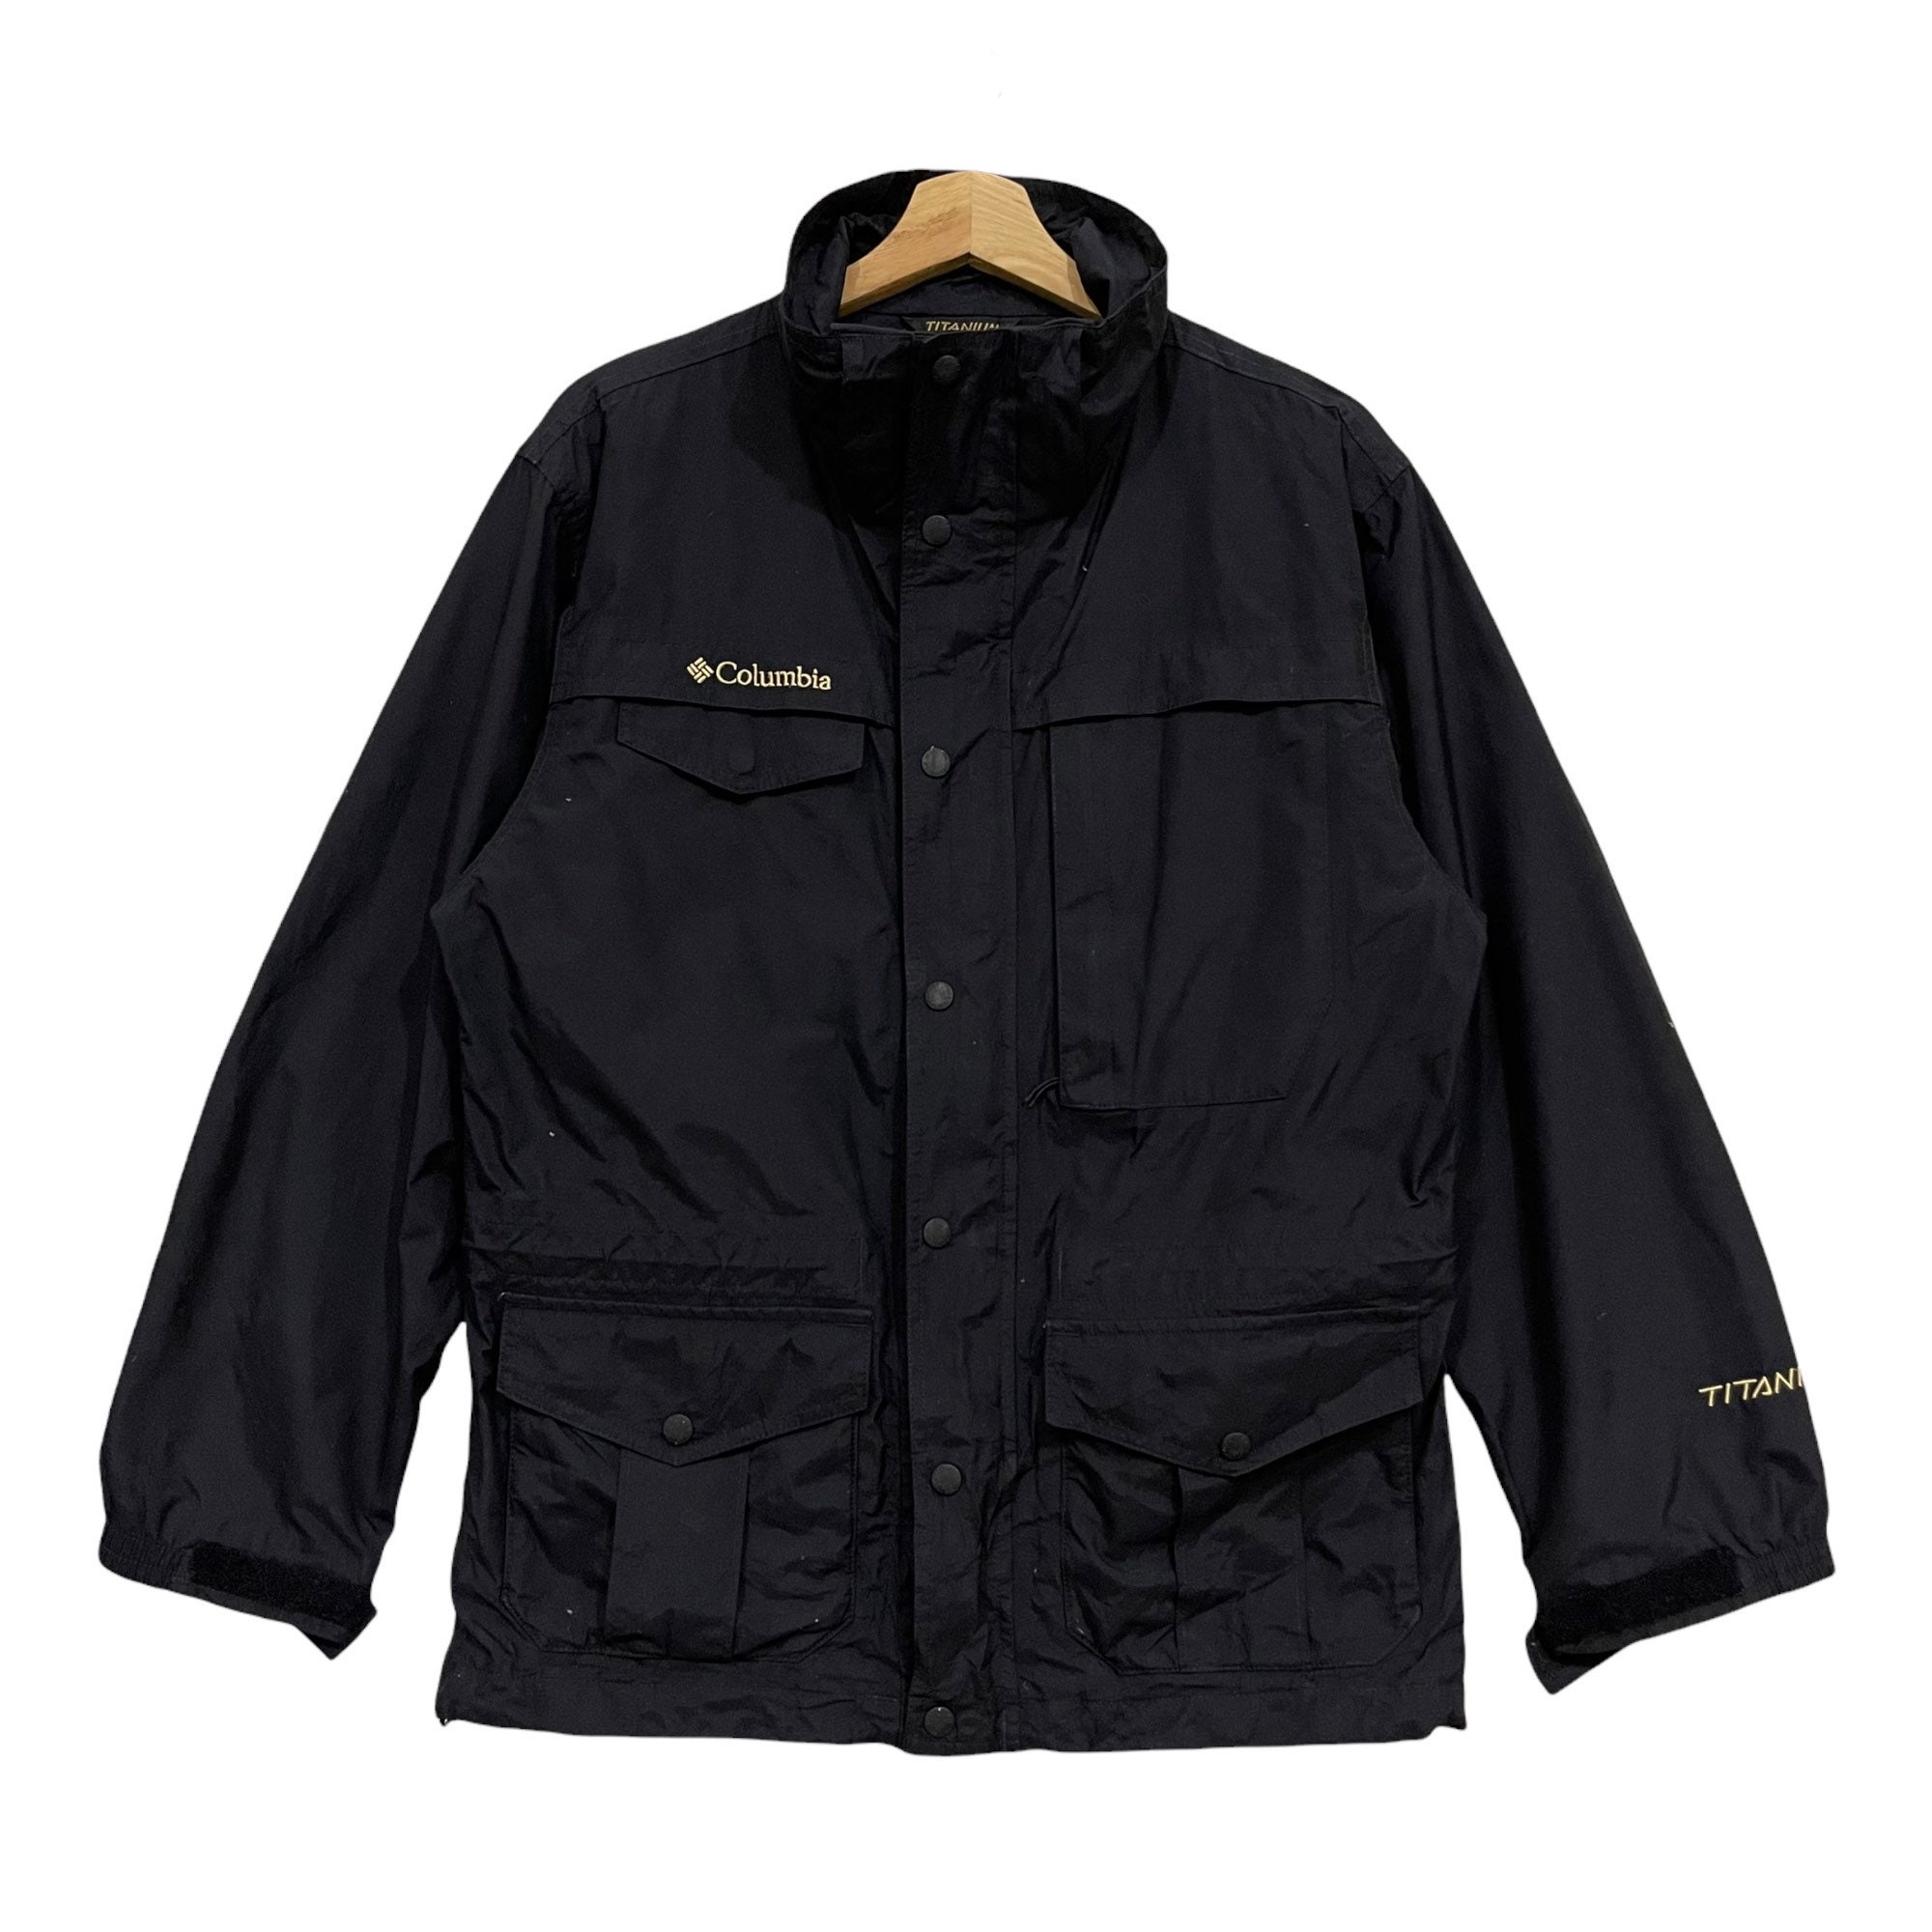 Columbia Titanium Jacket Size S Omni-tech Gray Black Snow Rain